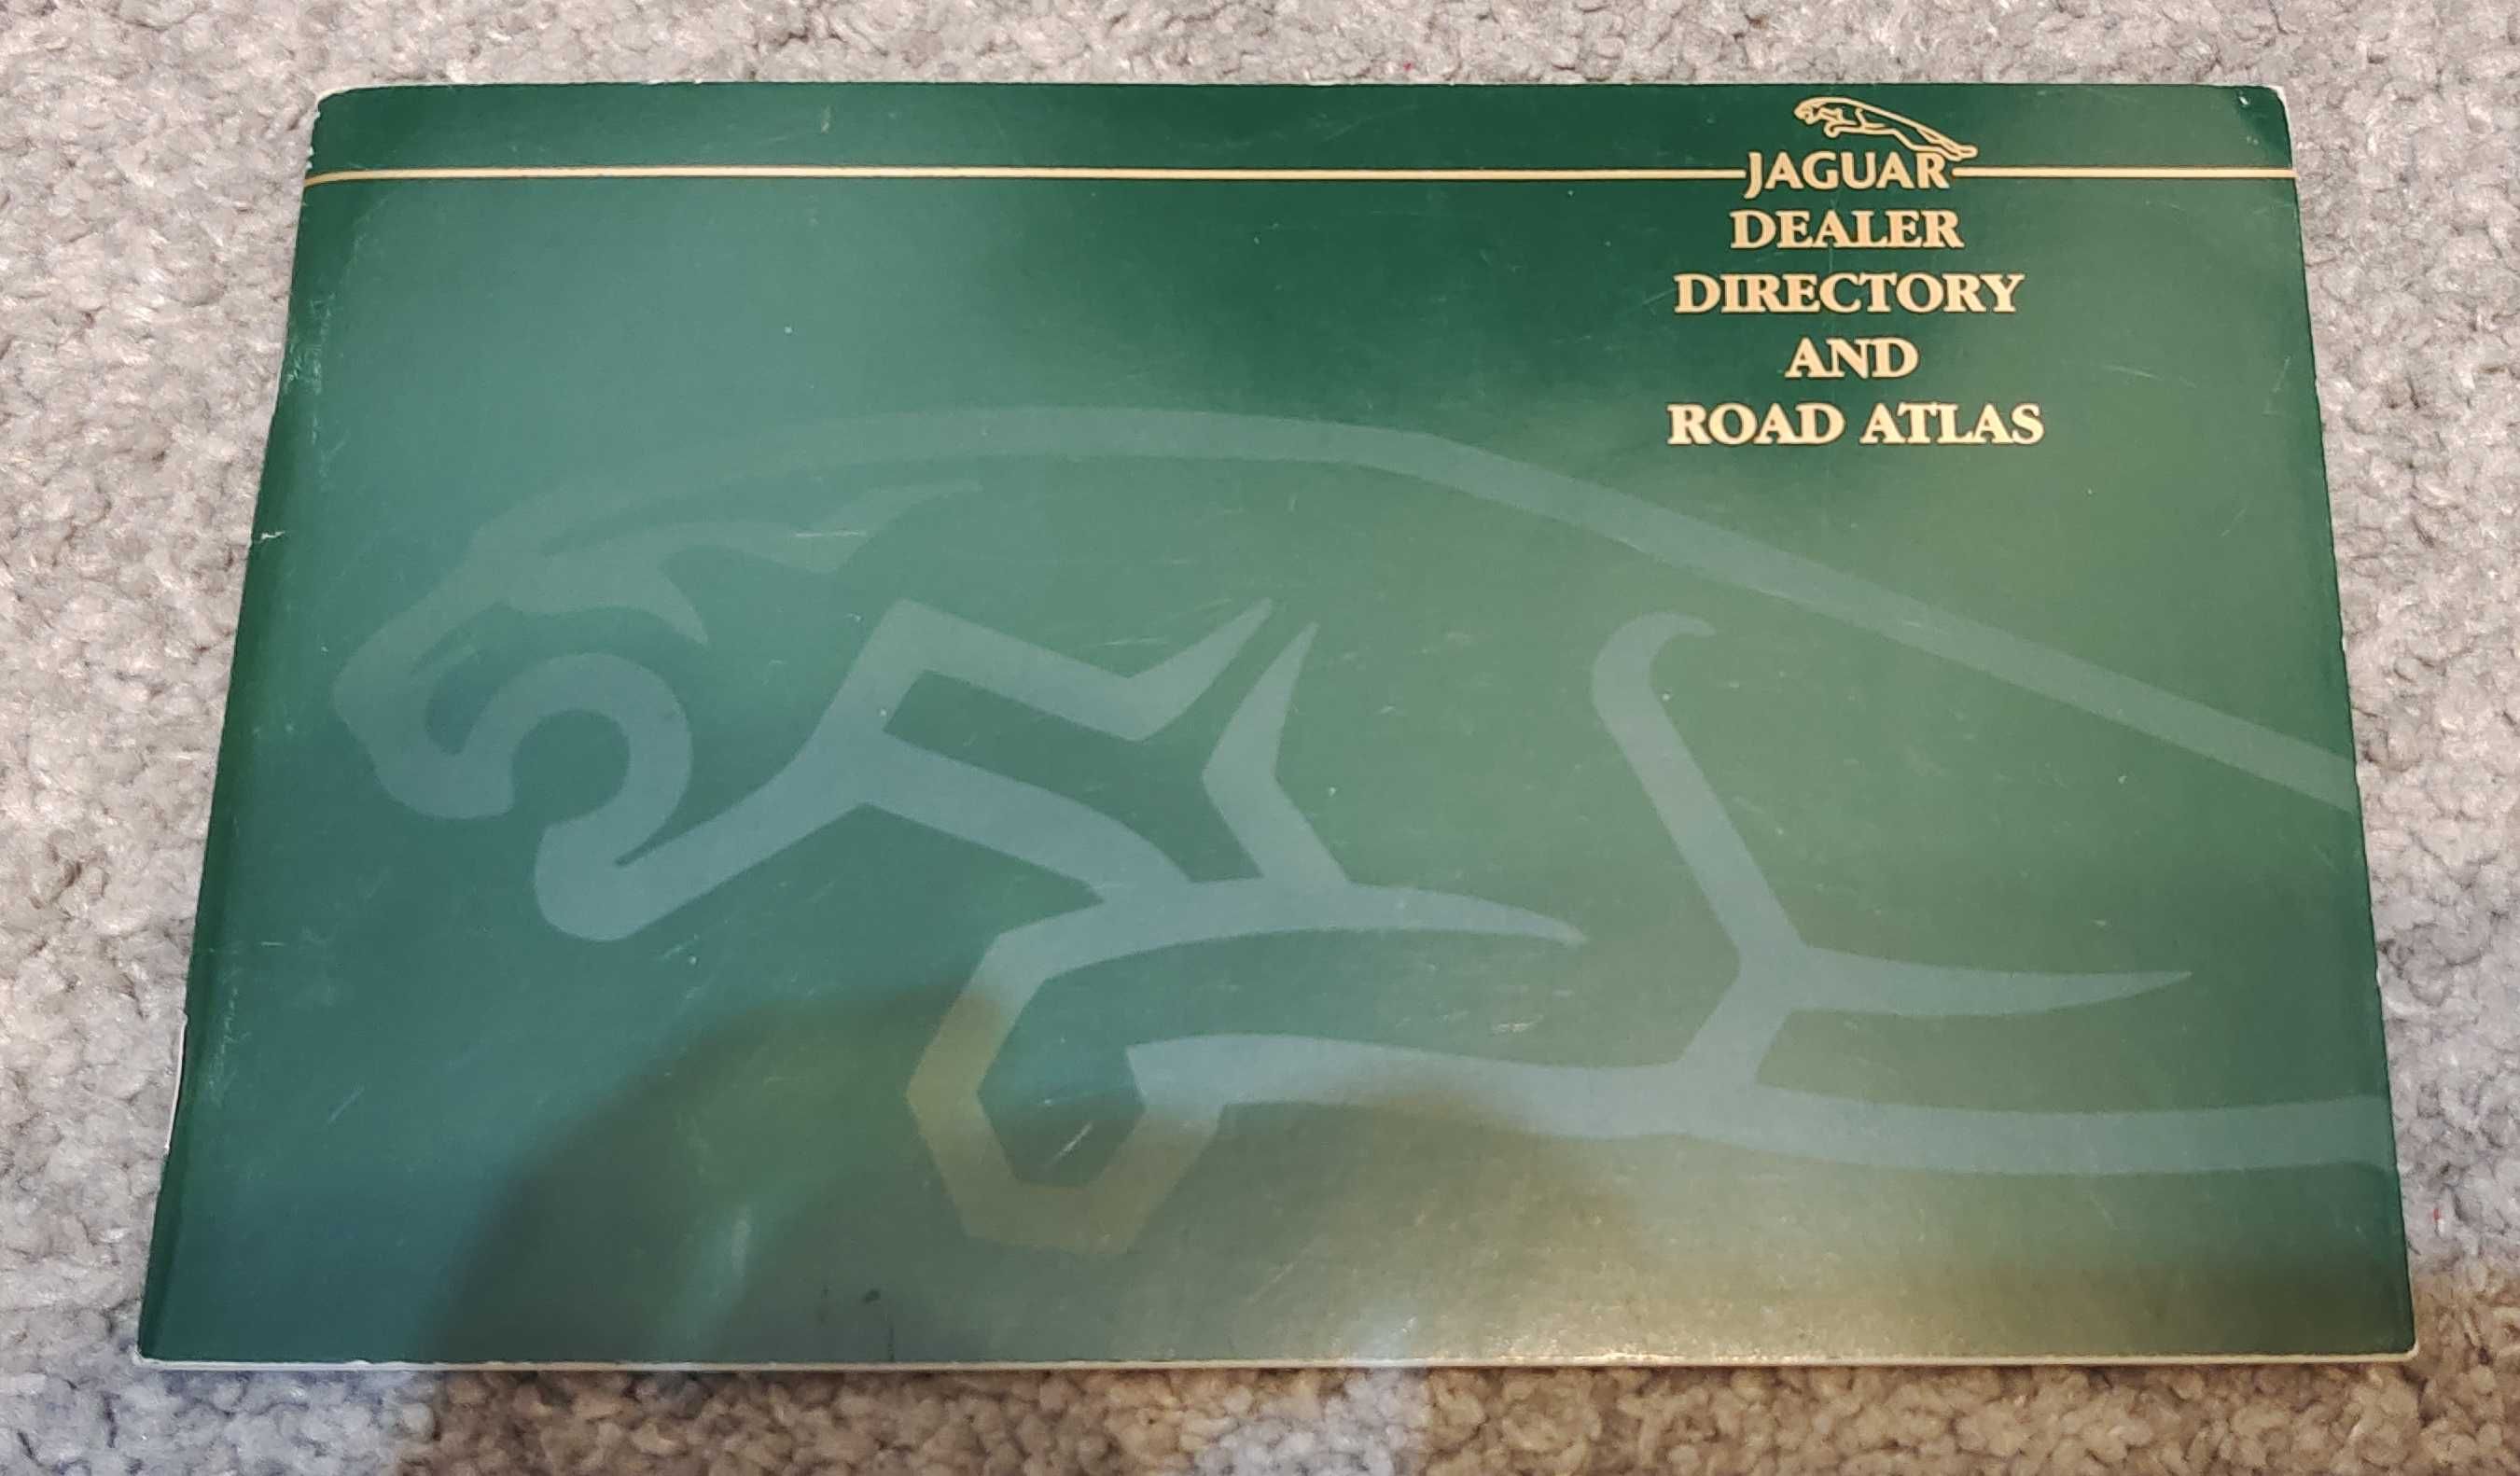 Jaguar Dealer Directory And Road Atlas